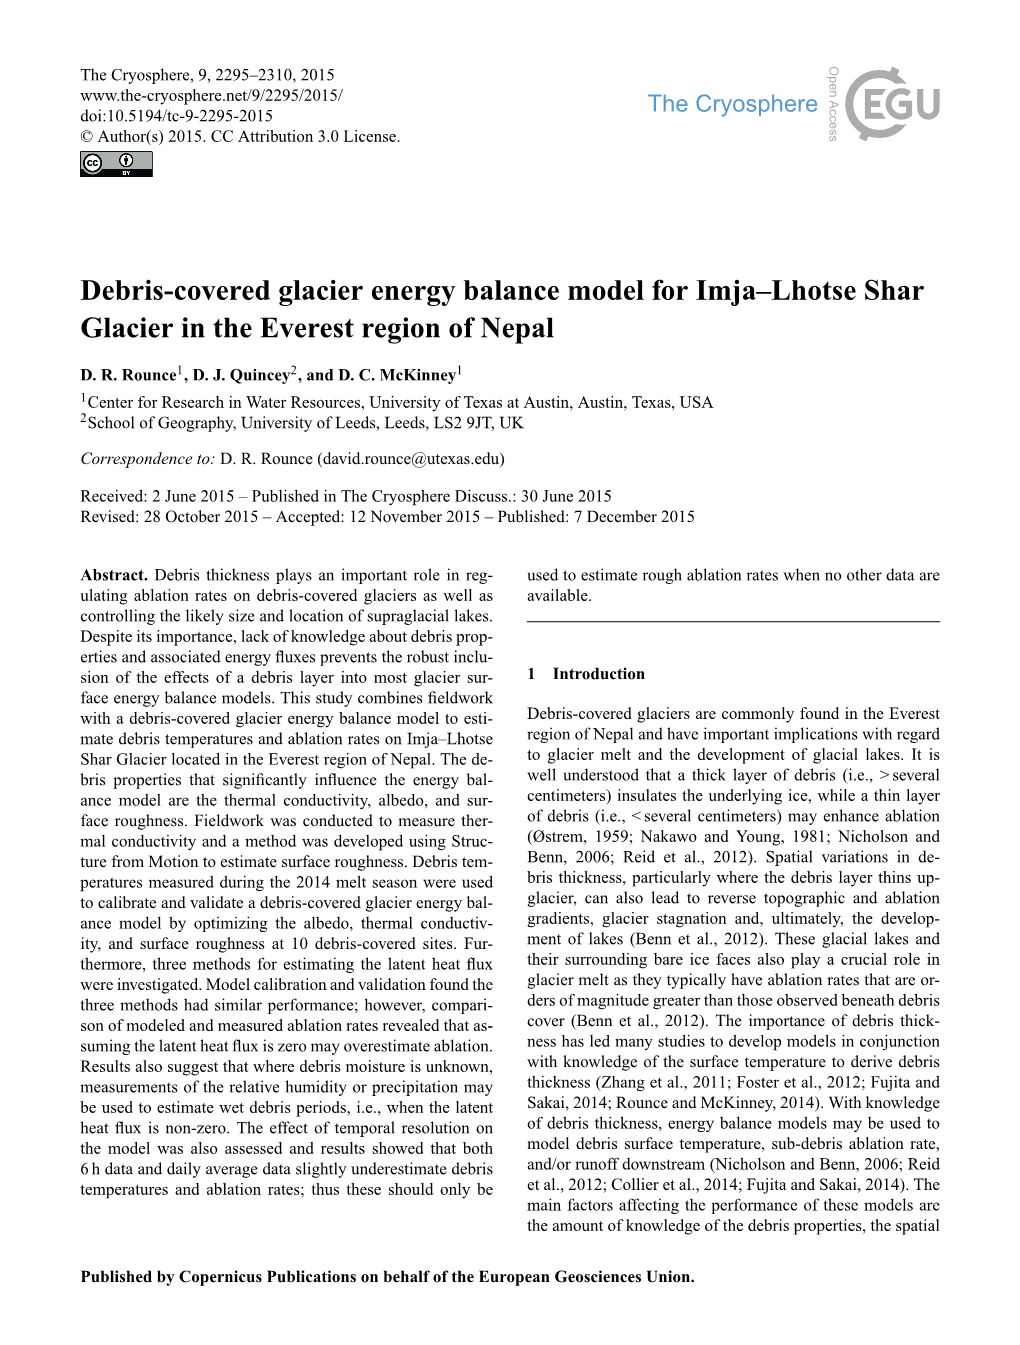 Debris-Covered Glacier Energy Balance Model for Imja–Lhotse Shar Glacier in the Everest Region of Nepal